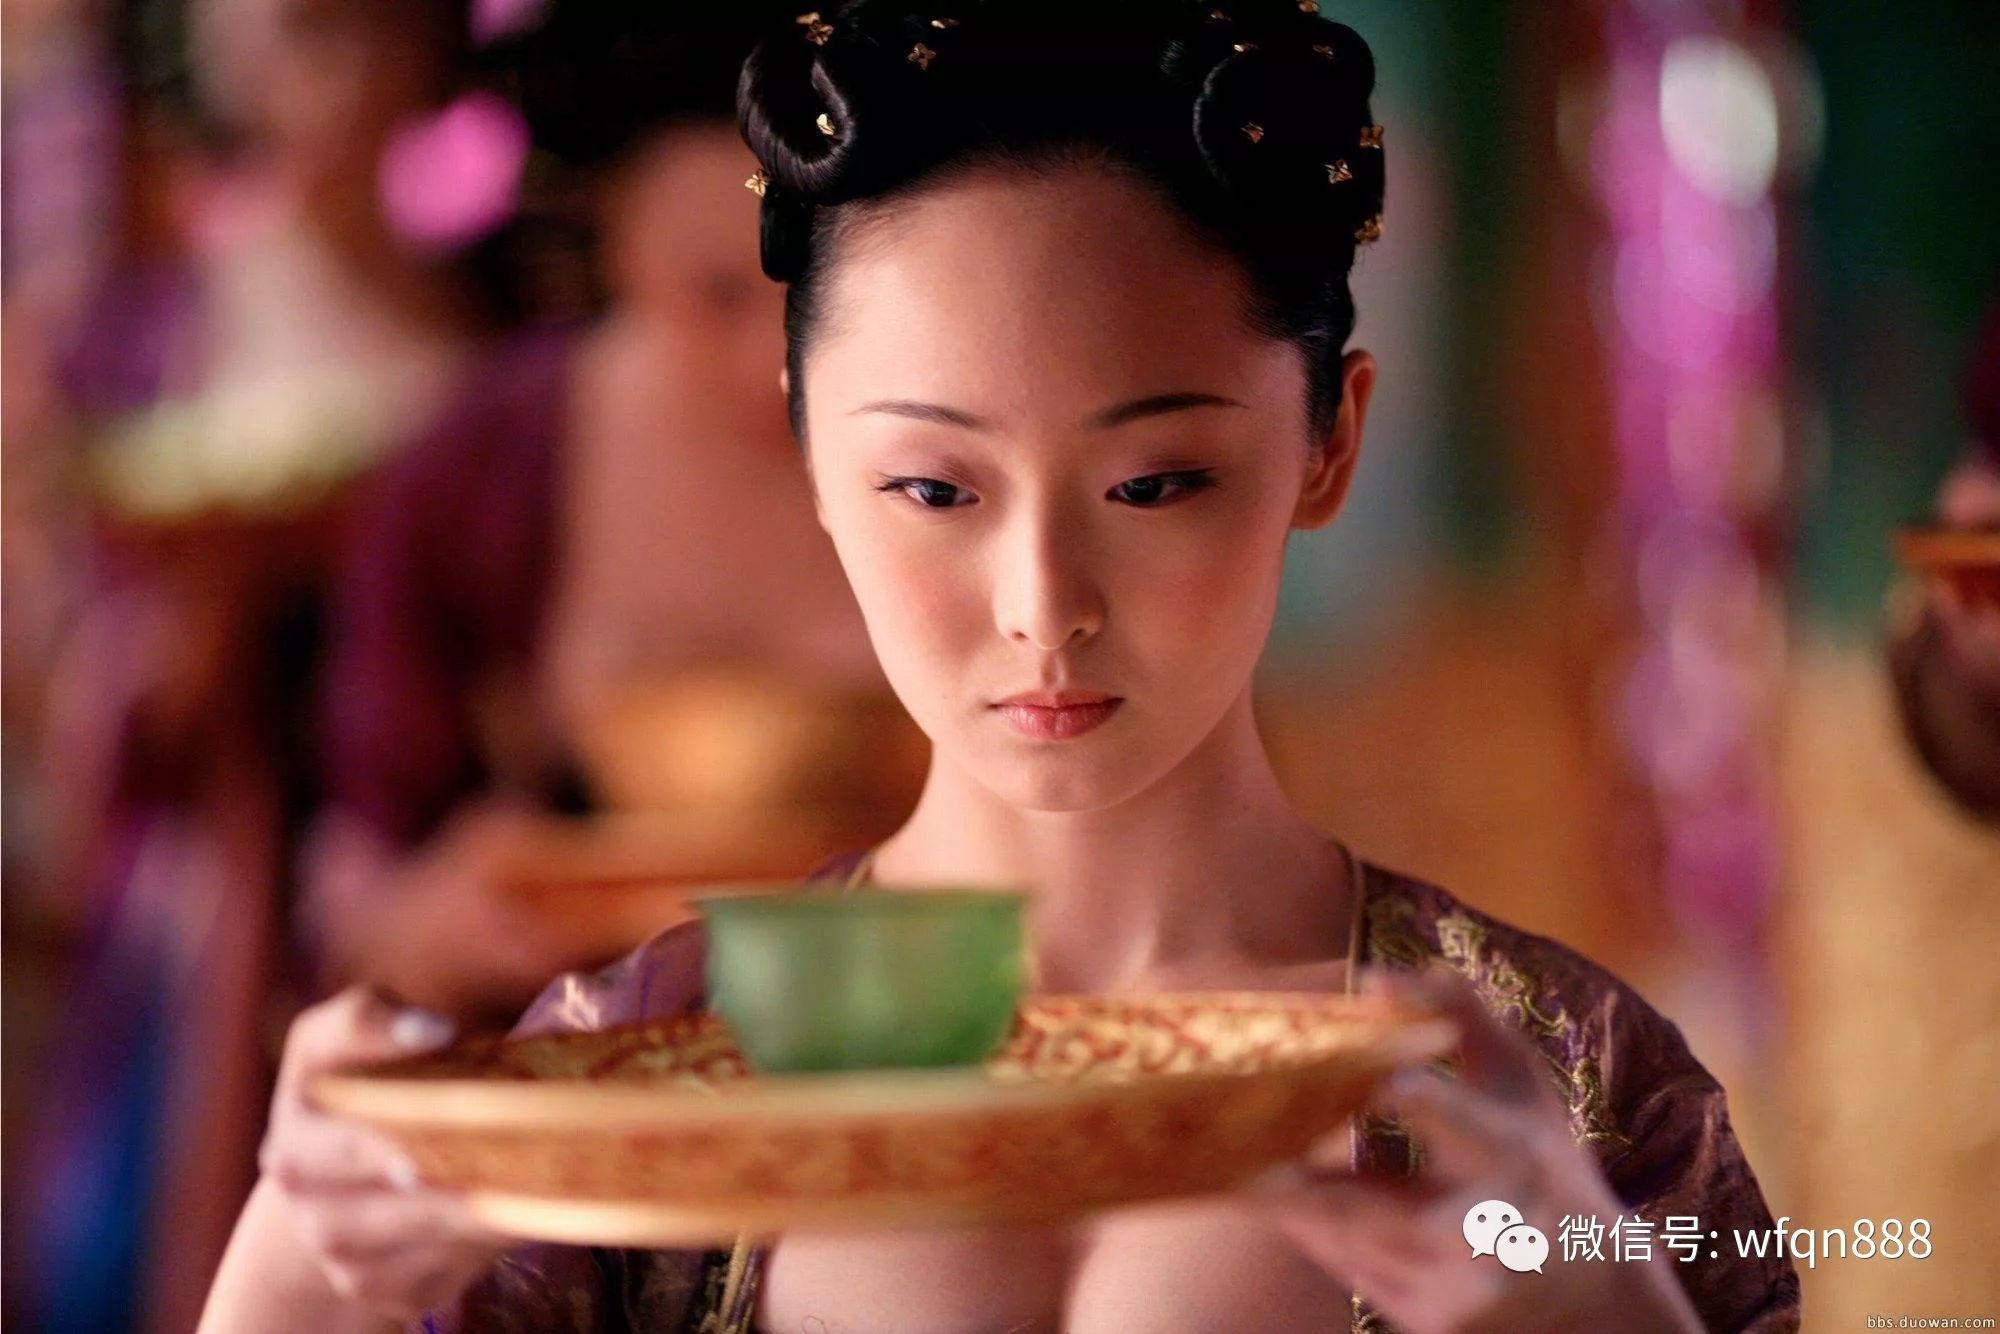 他是中国古代史上最恶心的一位皇帝,用童女炼丹,还不让宫女吃饭